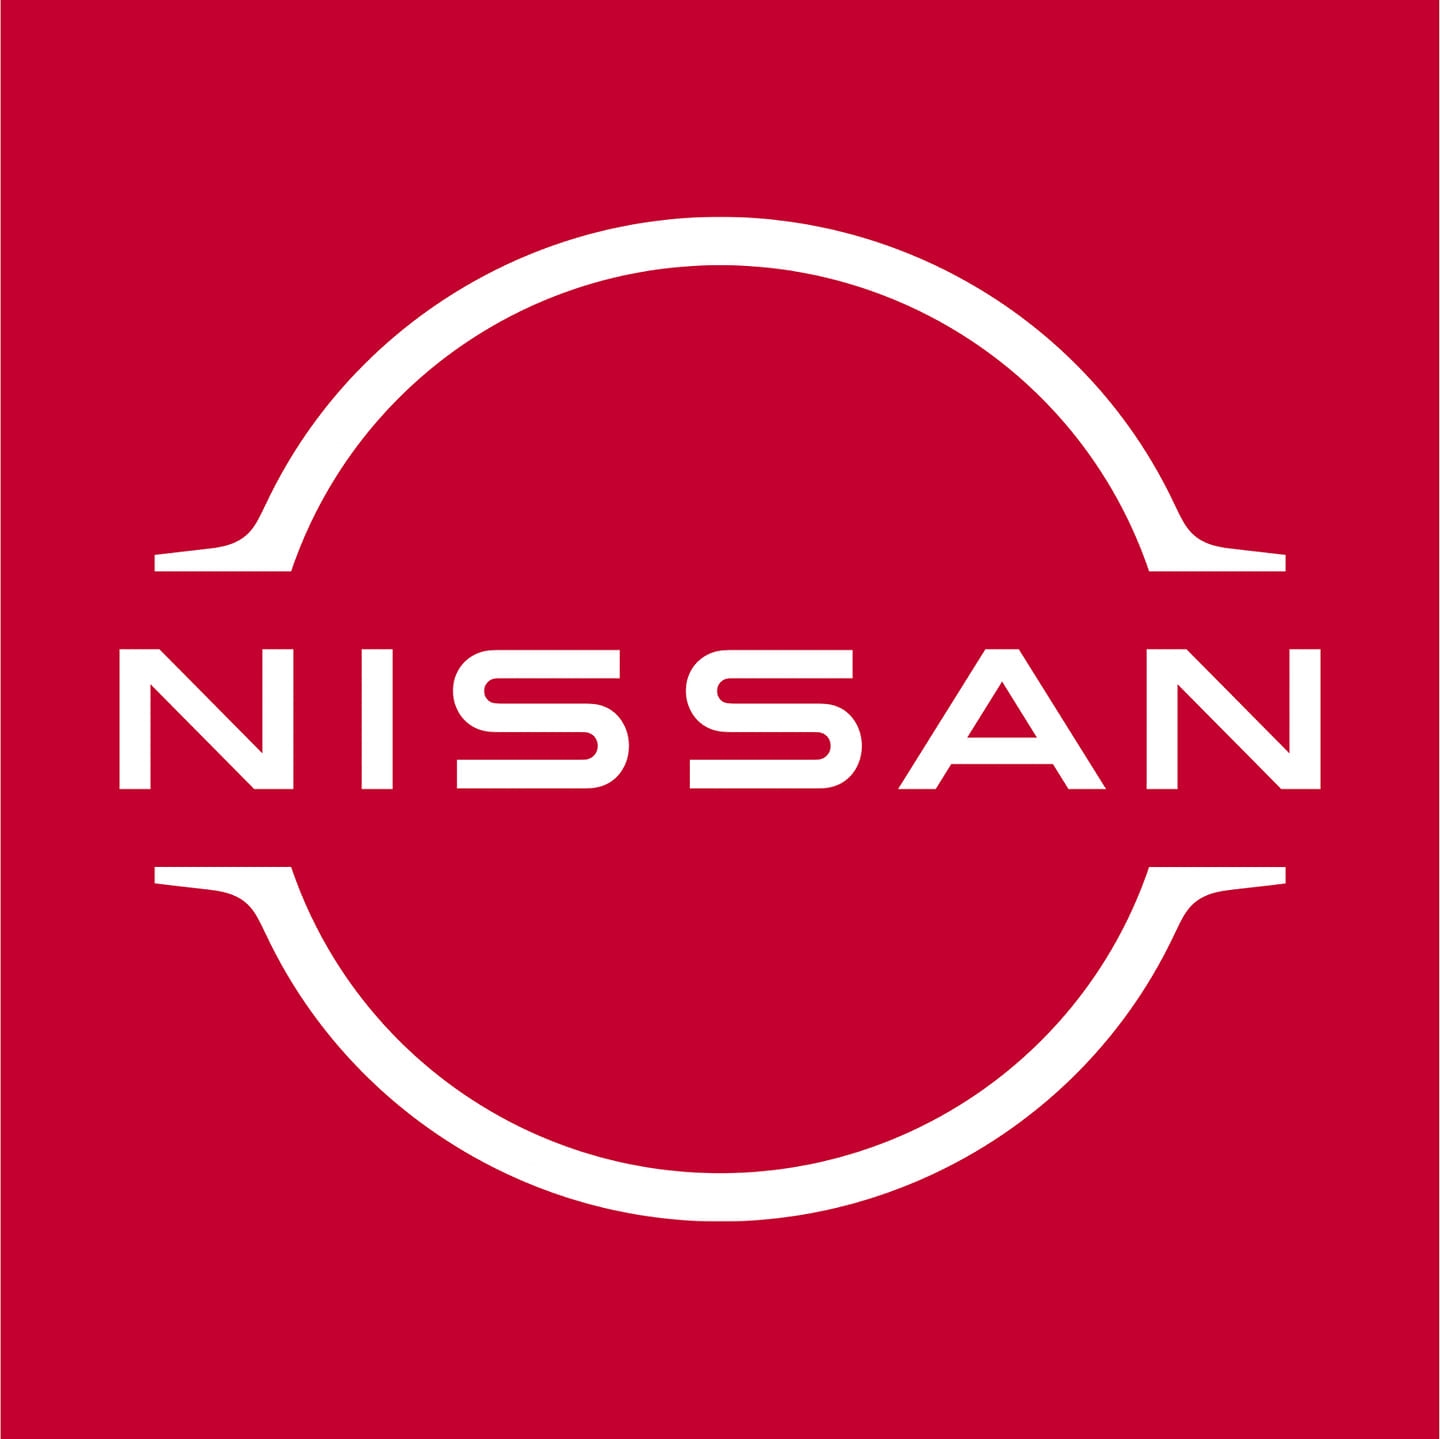 RIO NISSAN Logo